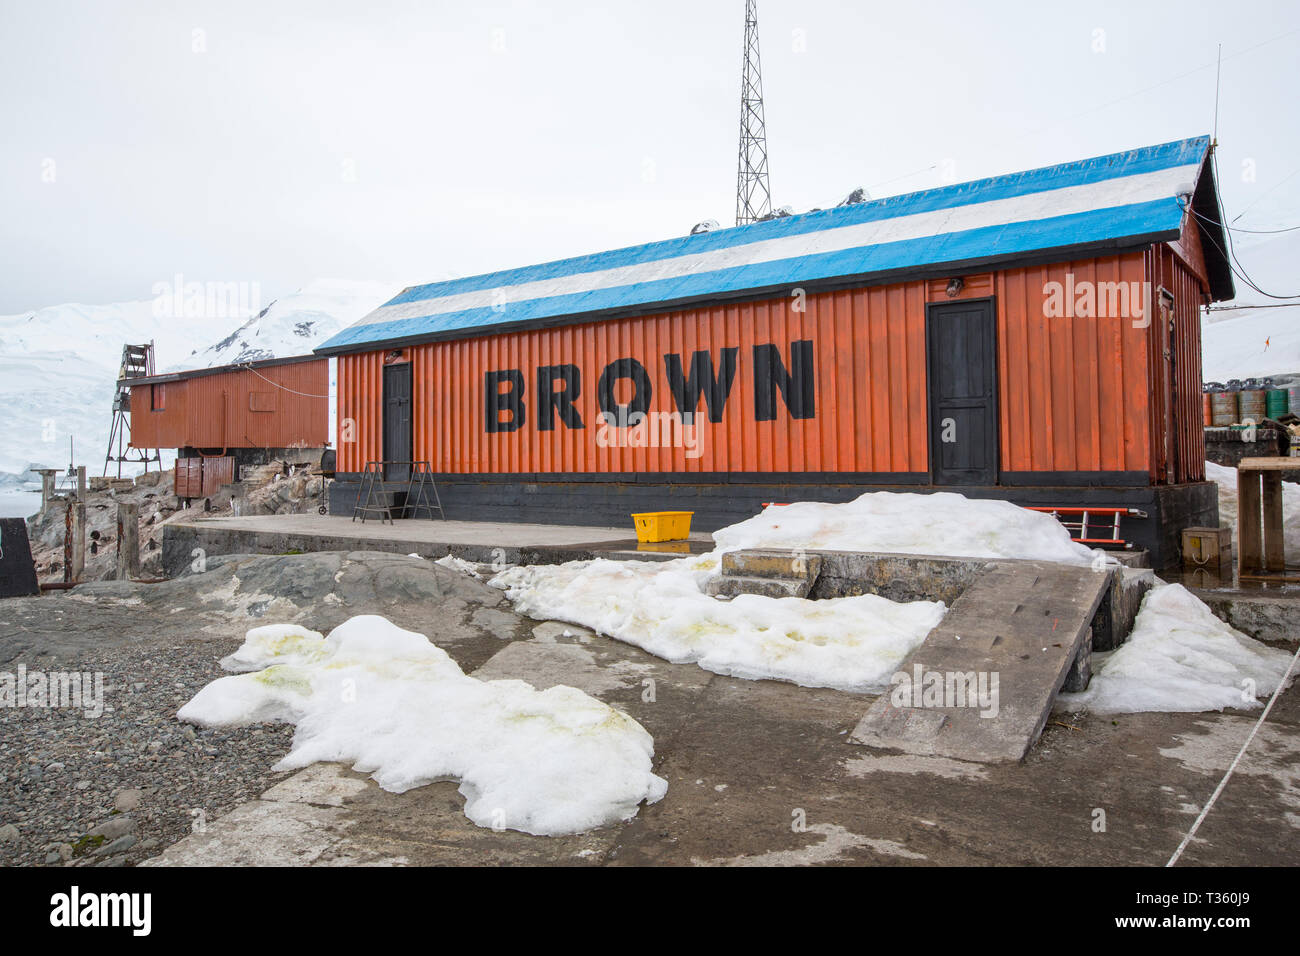 Almirante Brown station à Neko Harbour dans la péninsule antarctique, Paradise Bay. Banque D'Images